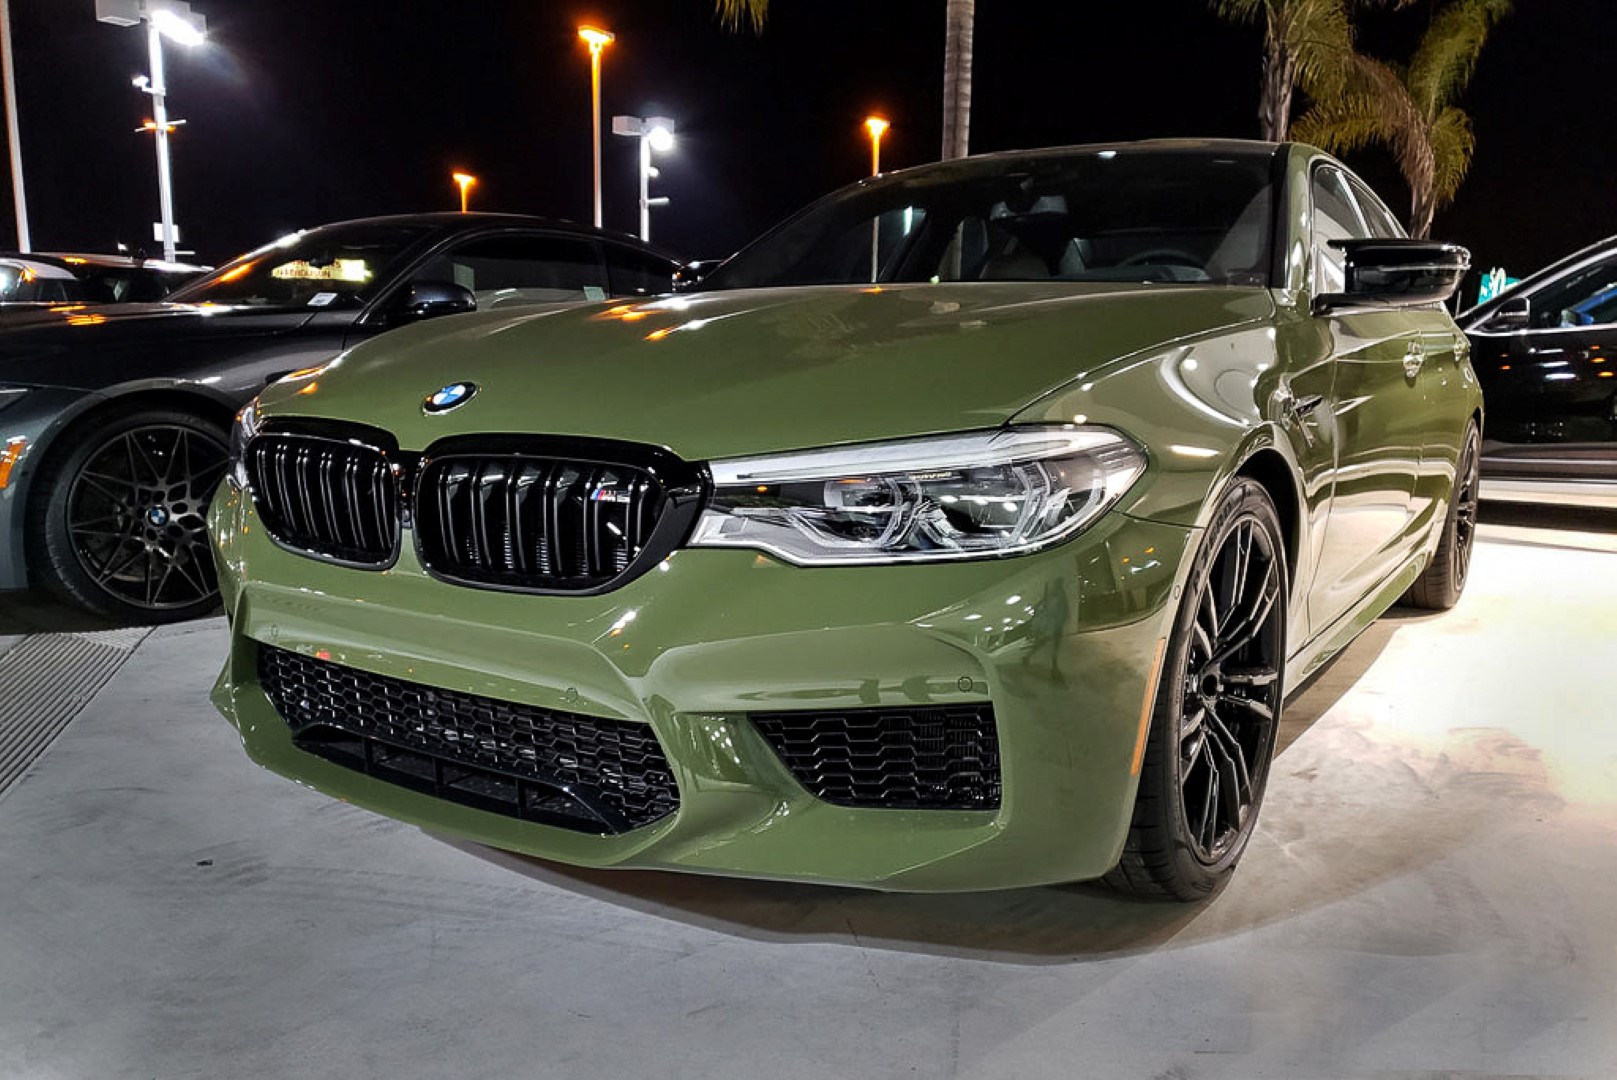 Бмв хаки. BMW m5 f90 Green. BMW m5 f90 Изумрудная. BMW m5 Urban Green. BMW m5 f90 Urban Green.